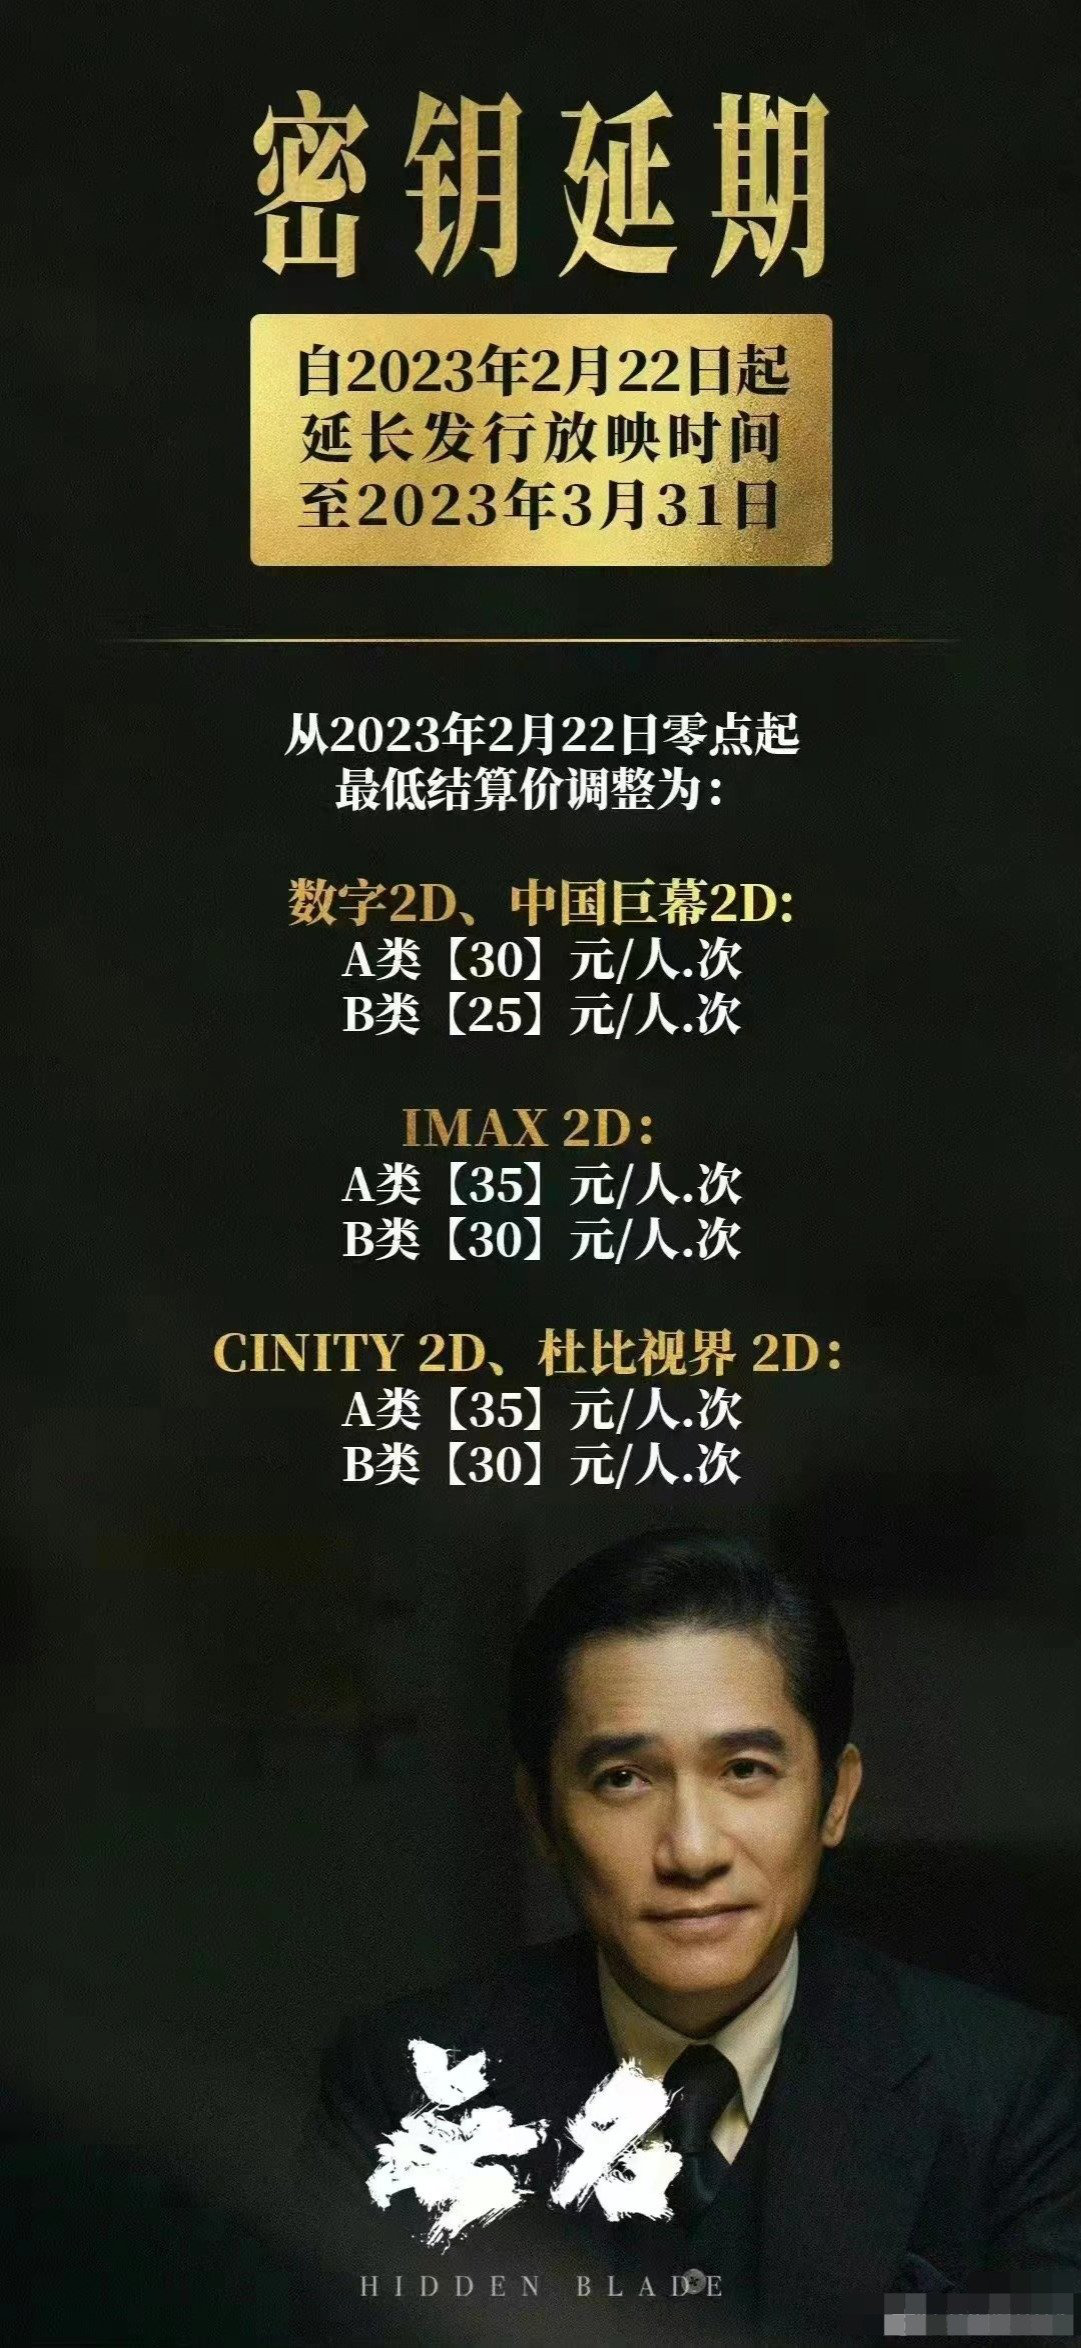 《流浪地球2》《满江红》等多部电影密钥延期至3月